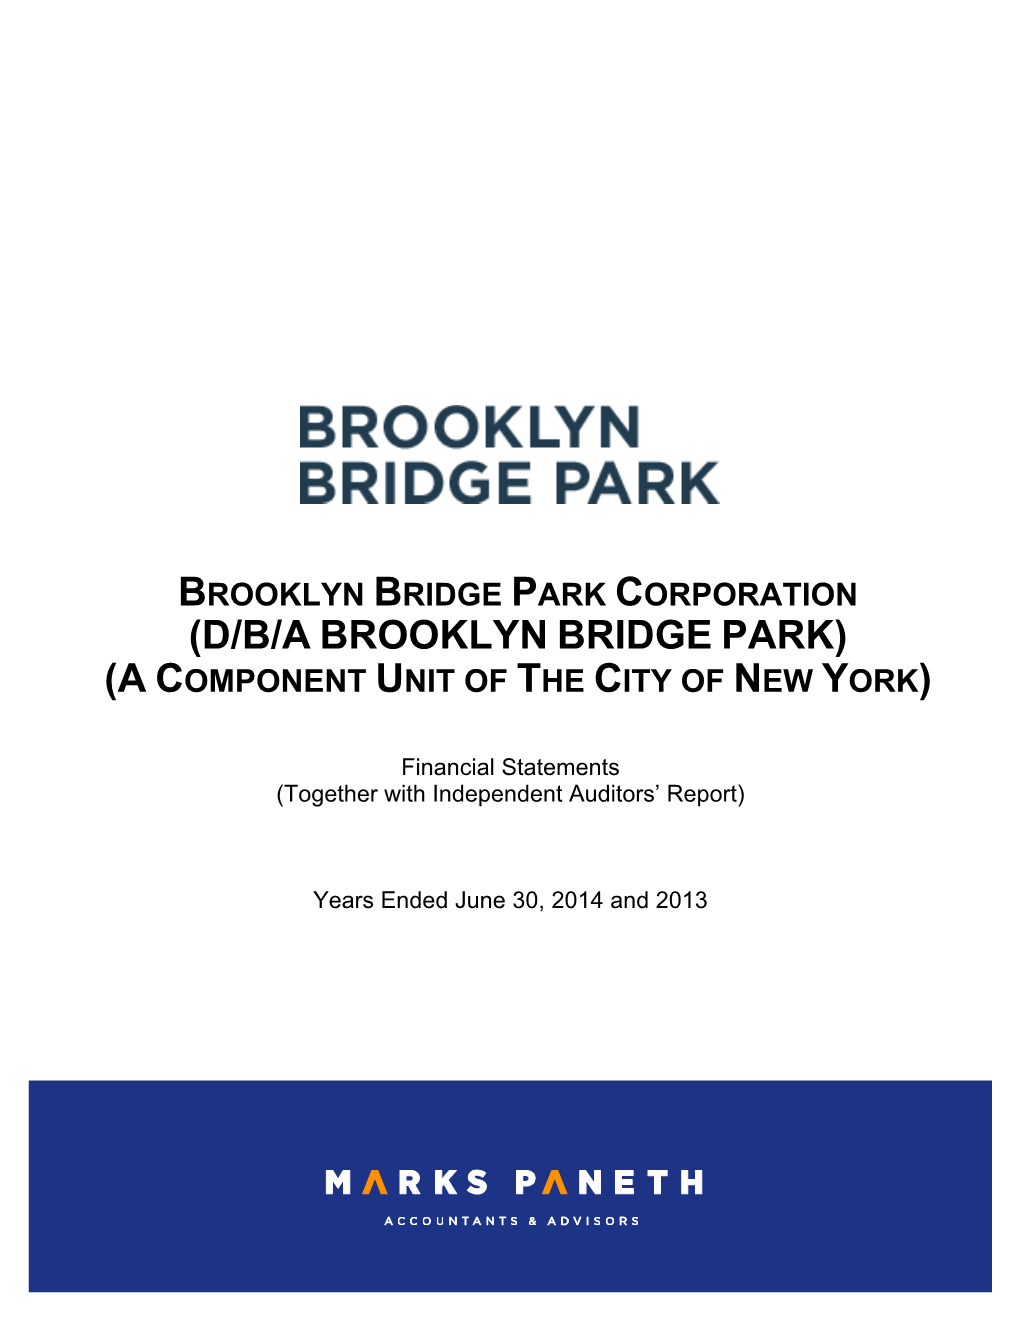 D/B/A Brooklyn Bridge Park) (A Component Unit of the City of New York